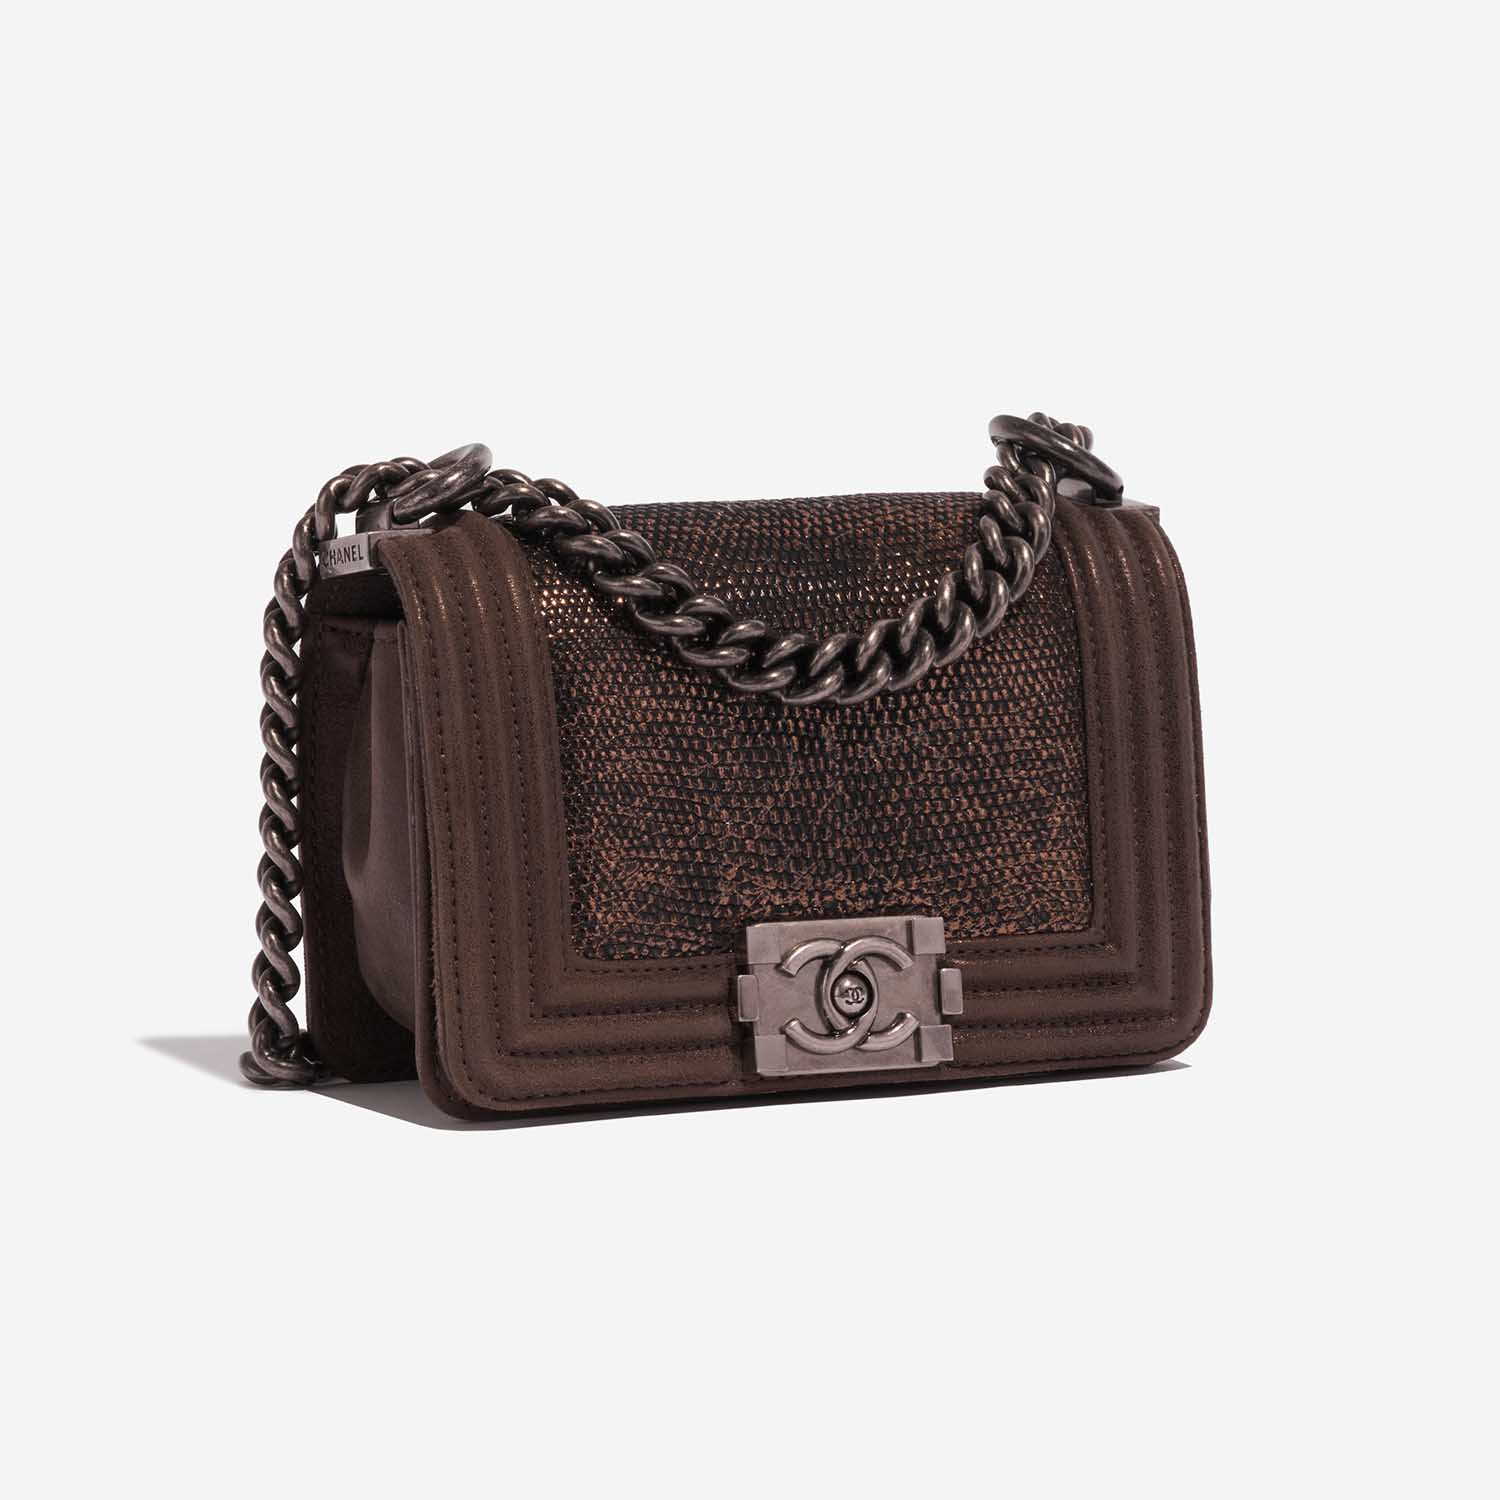 Chanel Boy Micro Brown-Gold Side Front | Verkaufen Sie Ihre Designer-Tasche auf Saclab.com